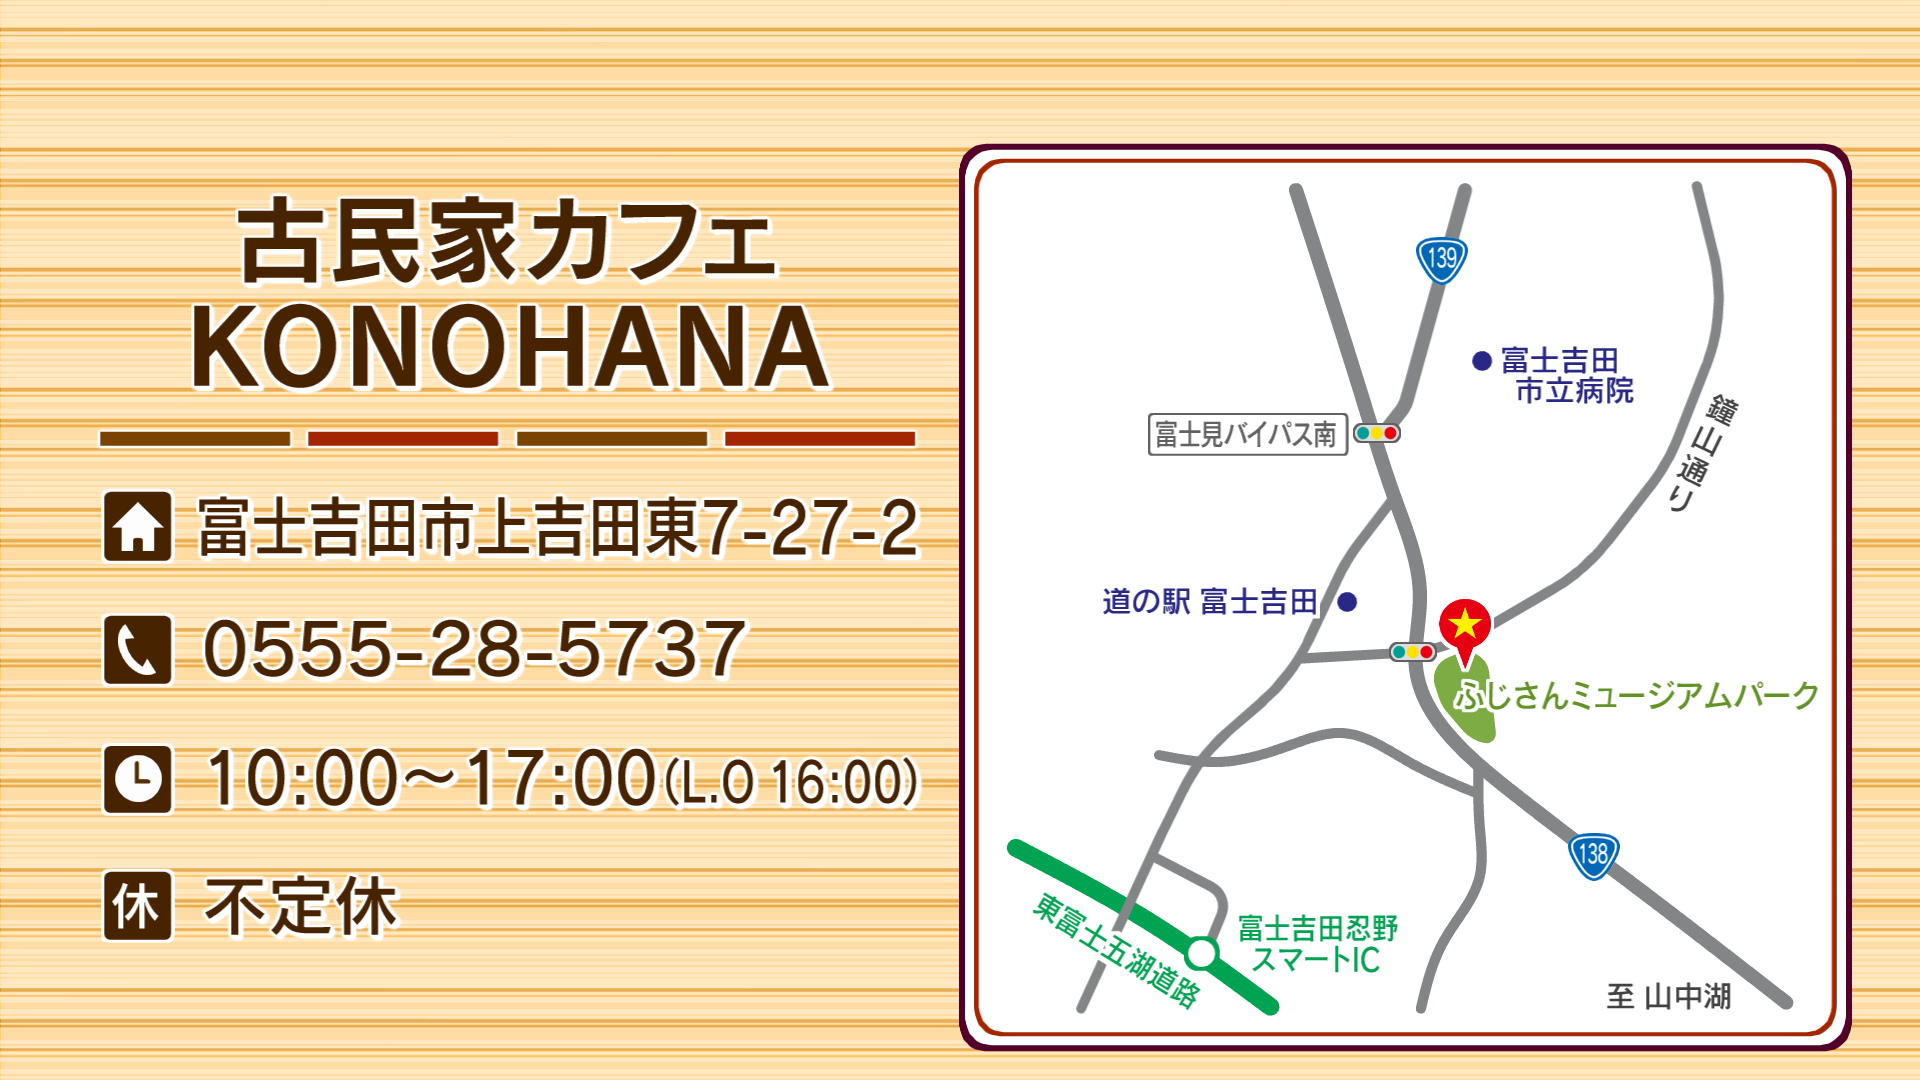 『古民家カフェ KONOHANA』は富士吉田市にあります